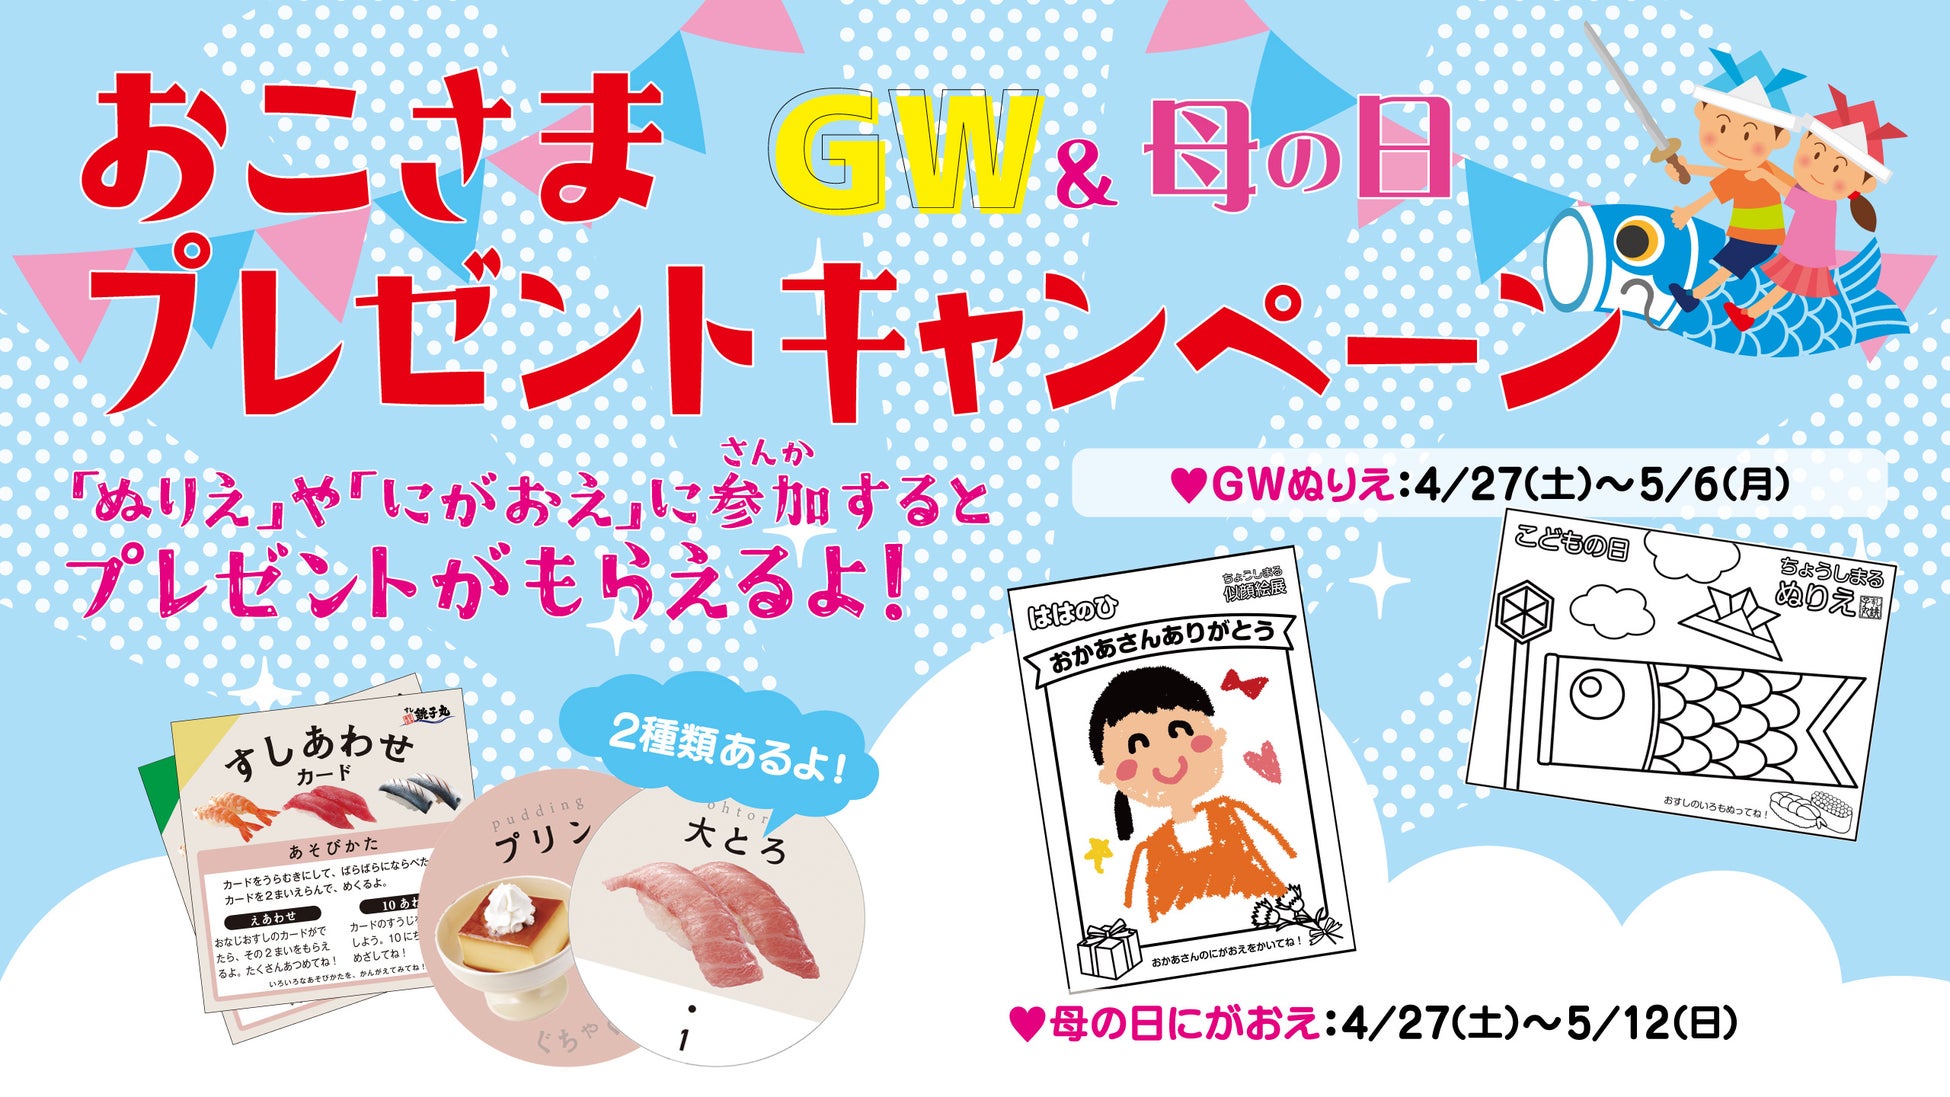 【銀座・和光】至極のショコラ・フレ「WAKU」を5月3日(金)より新発売